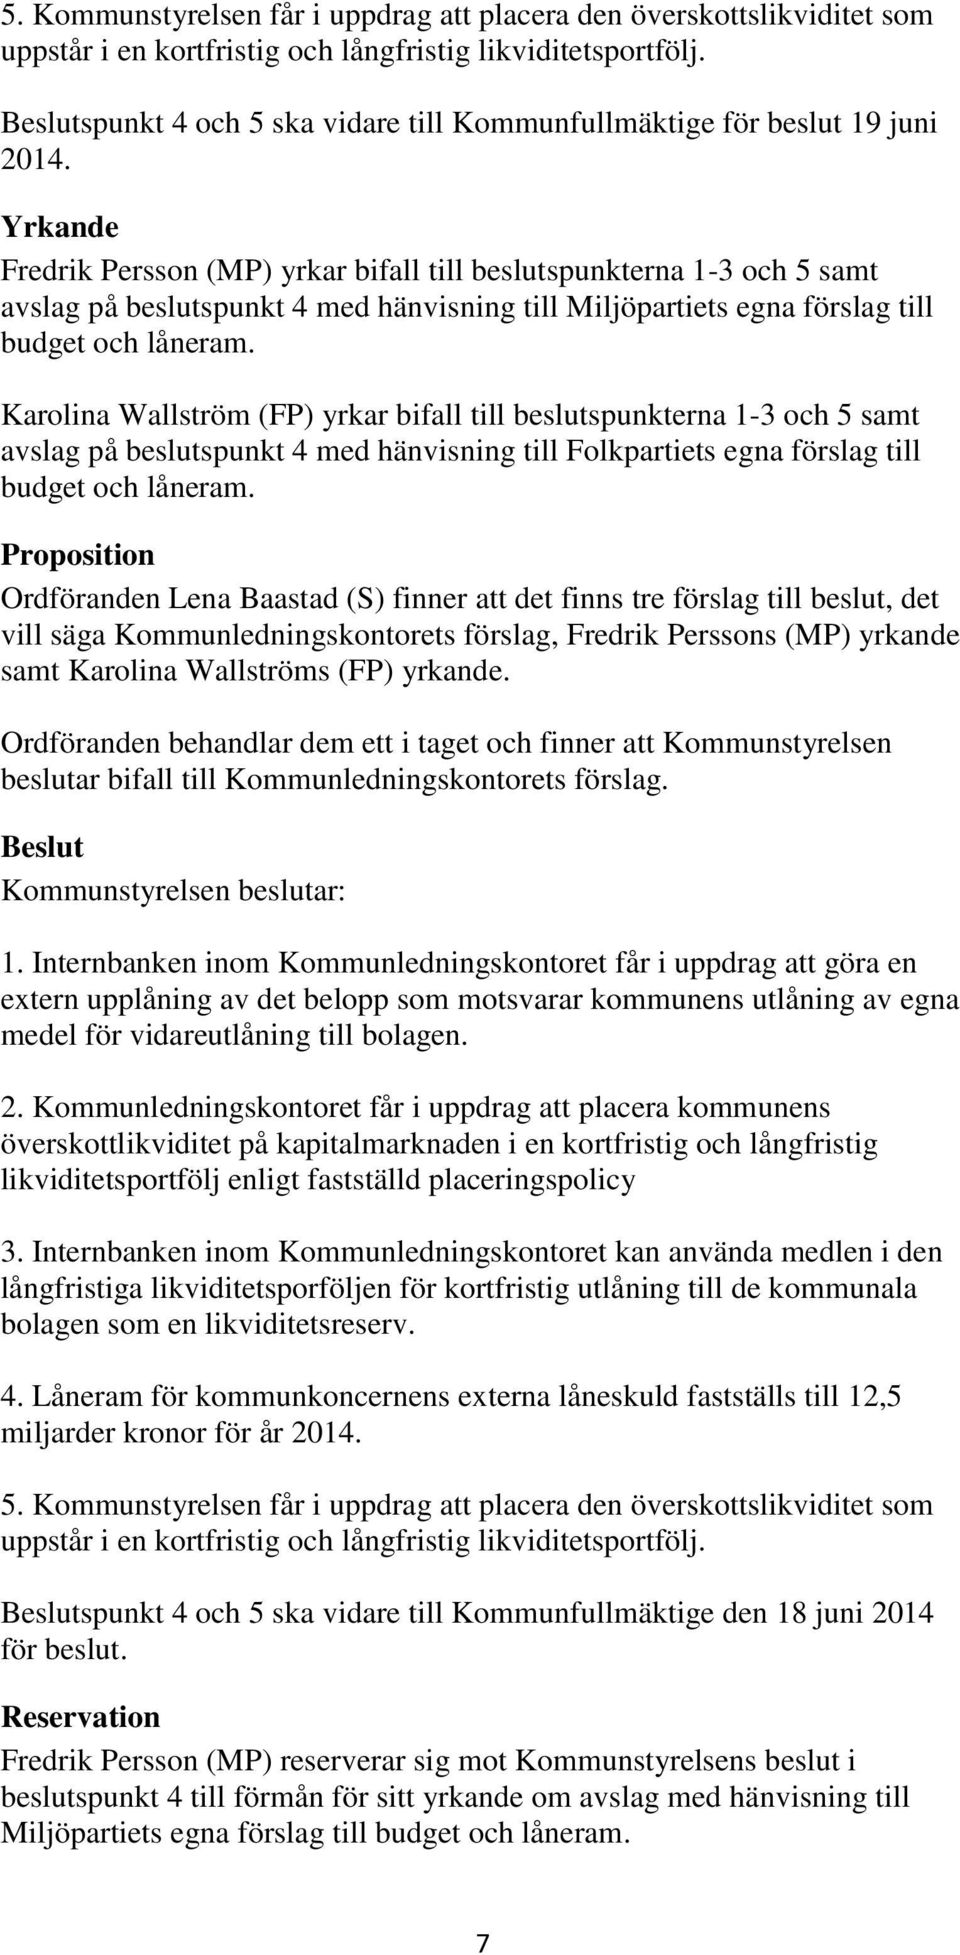 Yrkande Fredrik Persson (MP) yrkar bifall till beslutspunkterna 1-3 och 5 samt avslag på beslutspunkt 4 med hänvisning till Miljöpartiets egna förslag till budget och låneram.